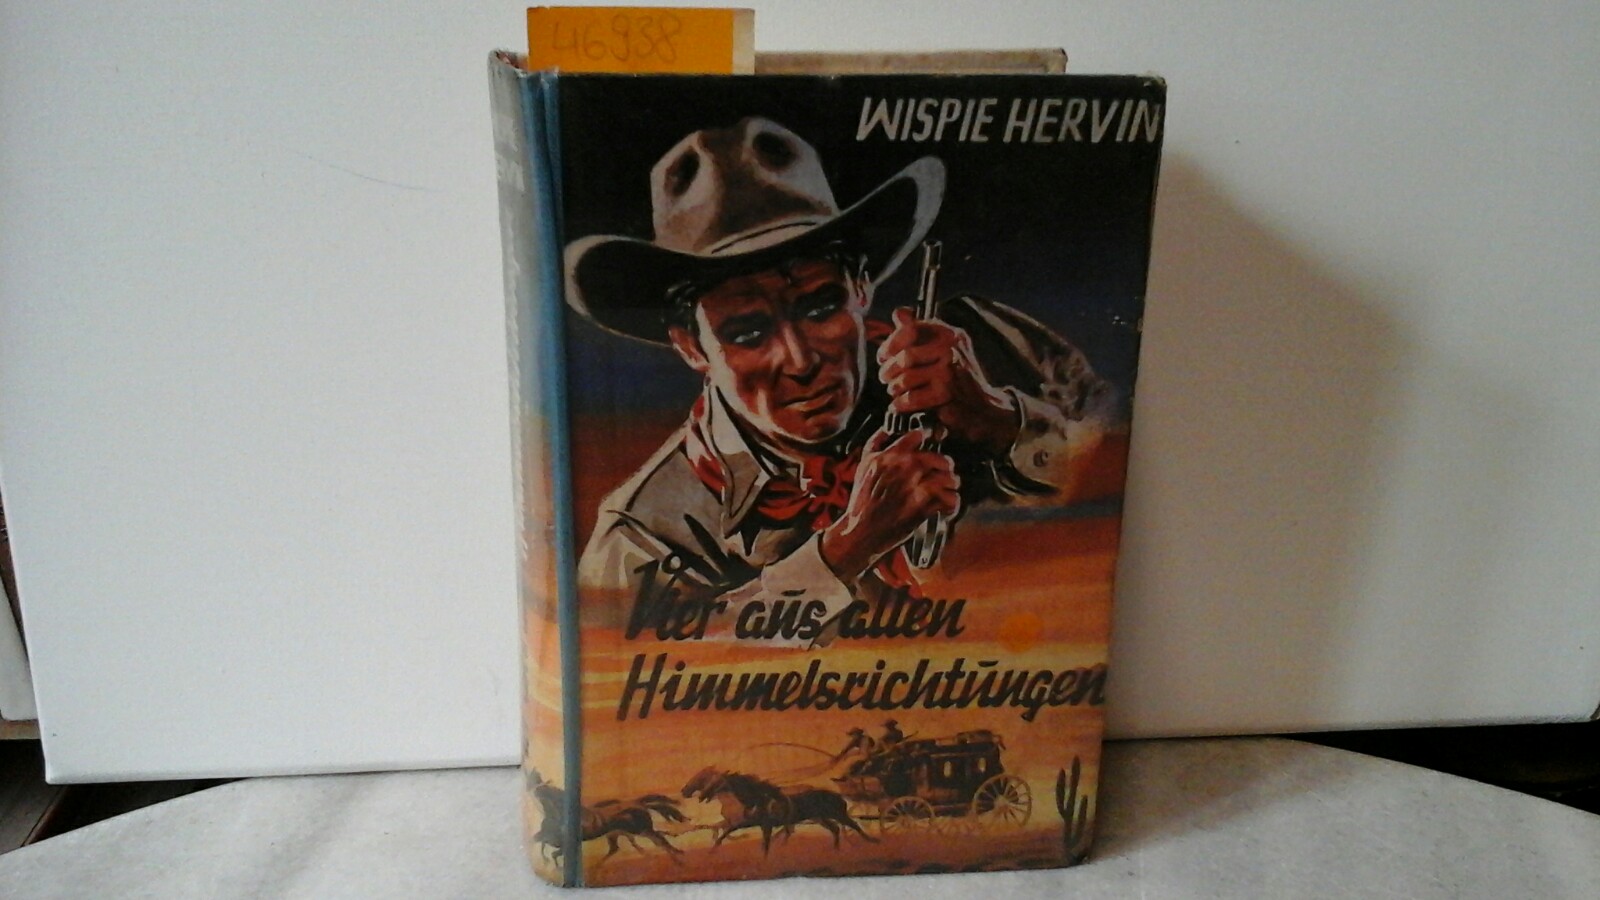 HERVIN, WISPIE: Vier aus allen Himmelsrichtungen. Wild-West-Roman.